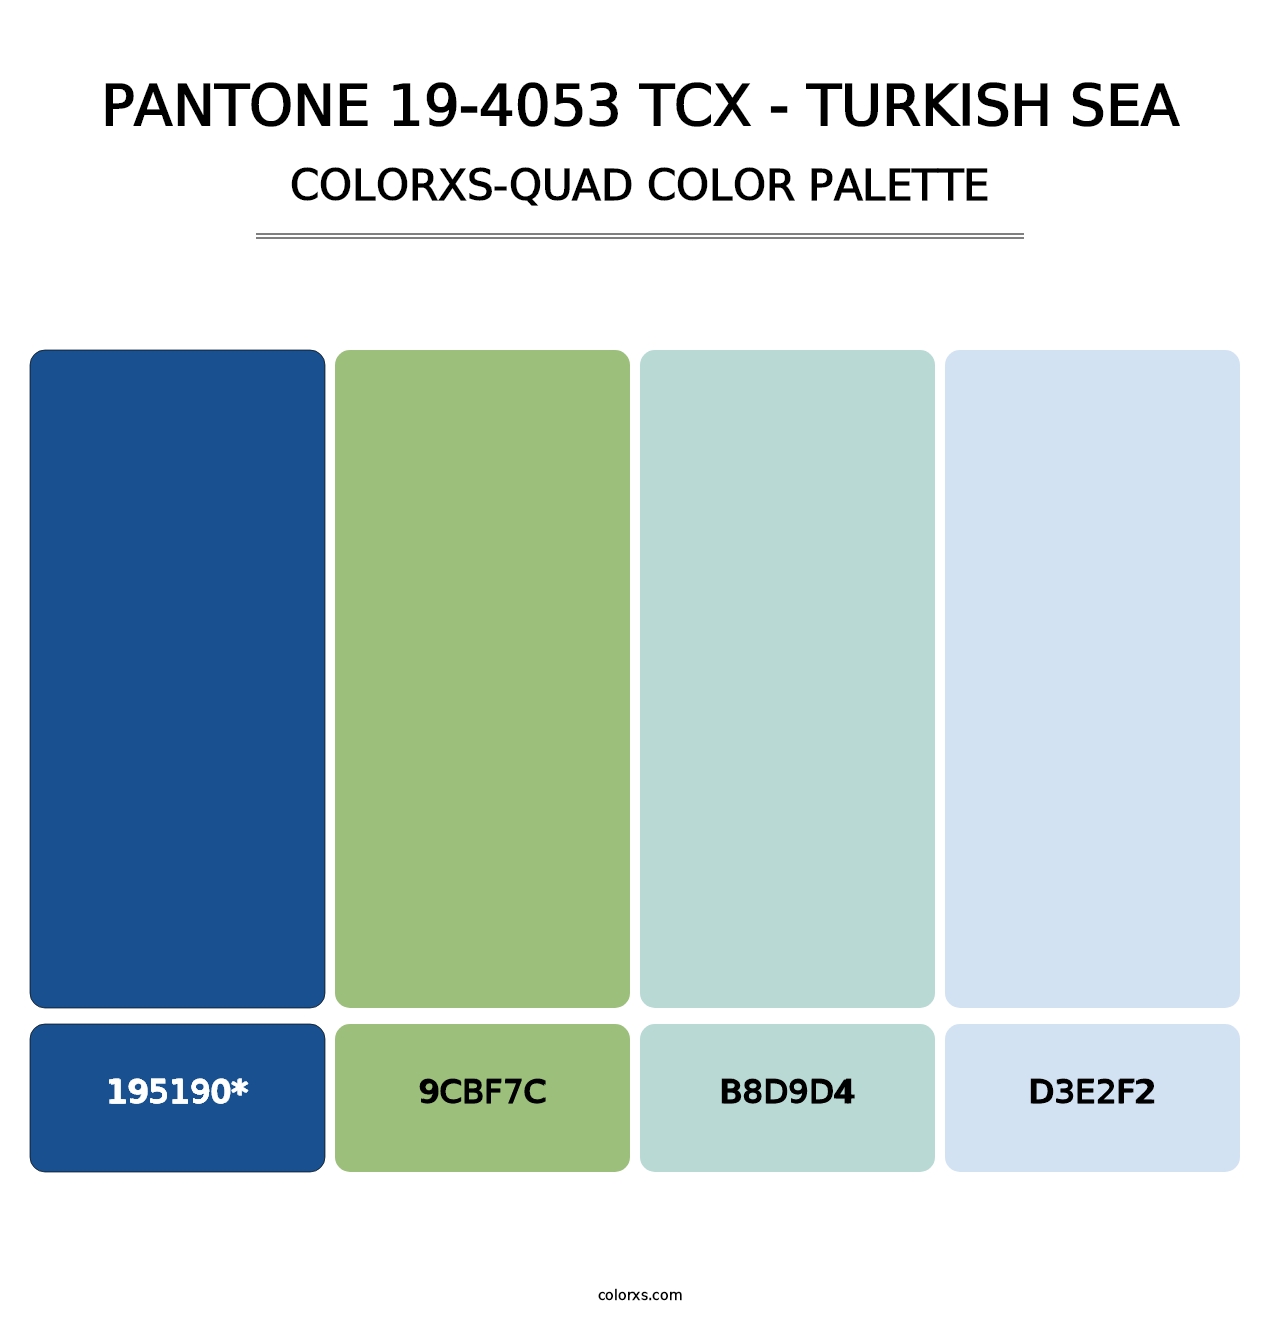 PANTONE 19-4053 TCX - Turkish Sea - Colorxs Quad Palette